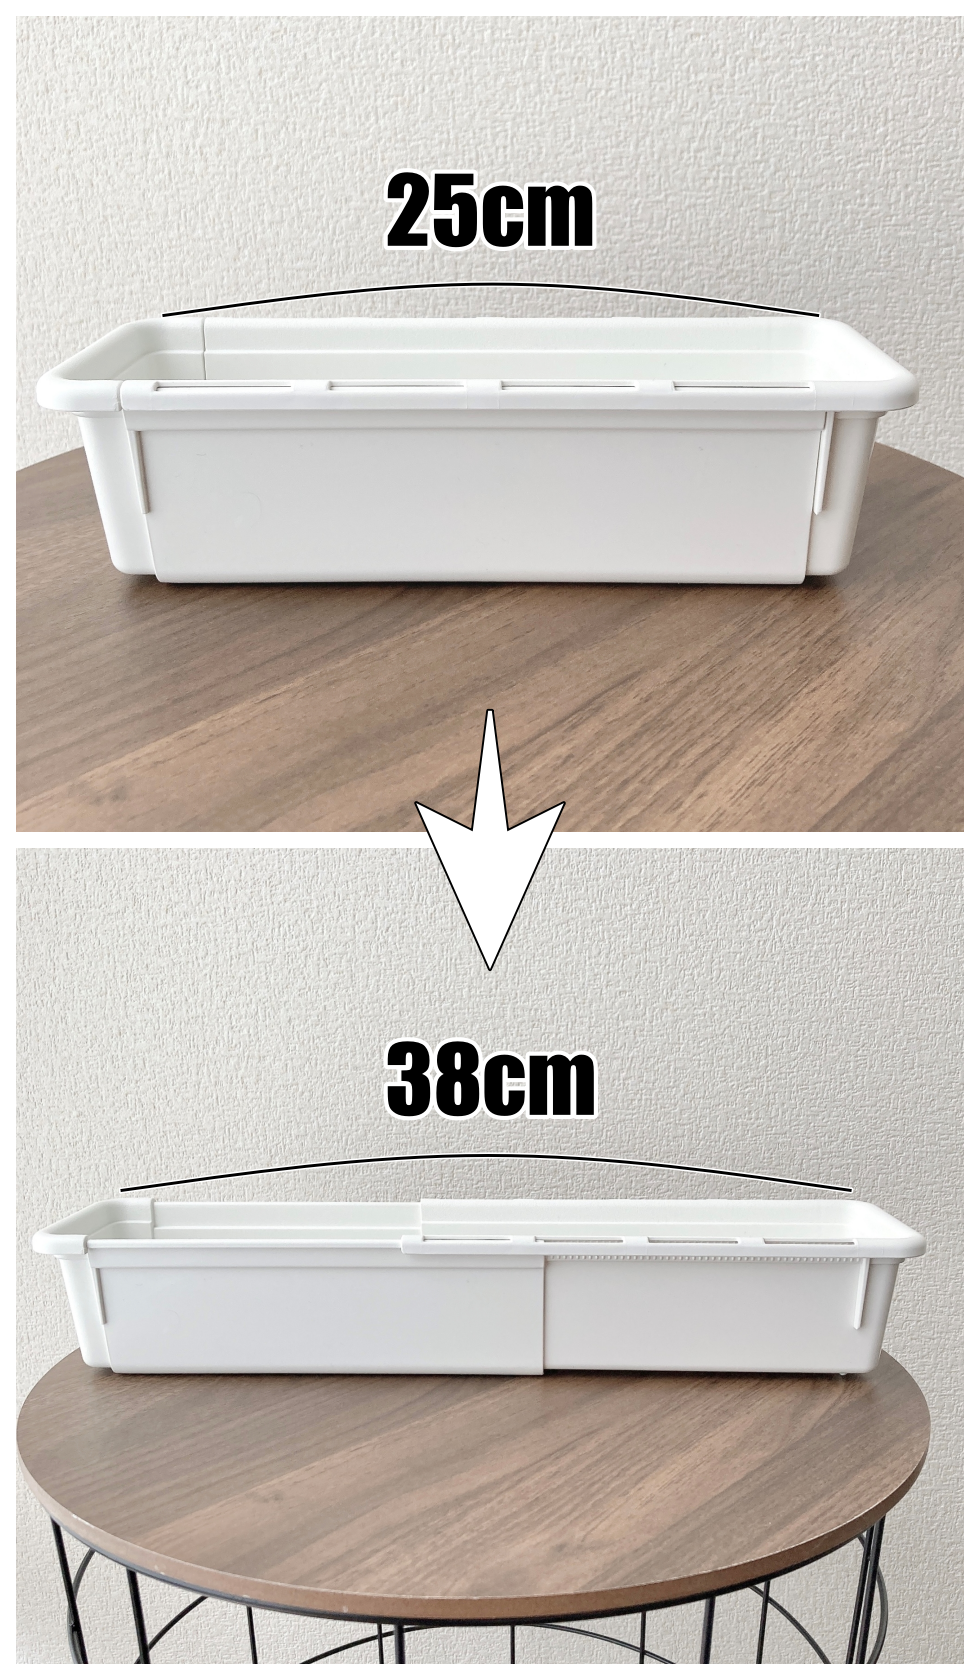 IKEA（イケア）のオススメの収納グッズ「KACKLA カックラ 伸長式ボックス（25-38×9cm）」